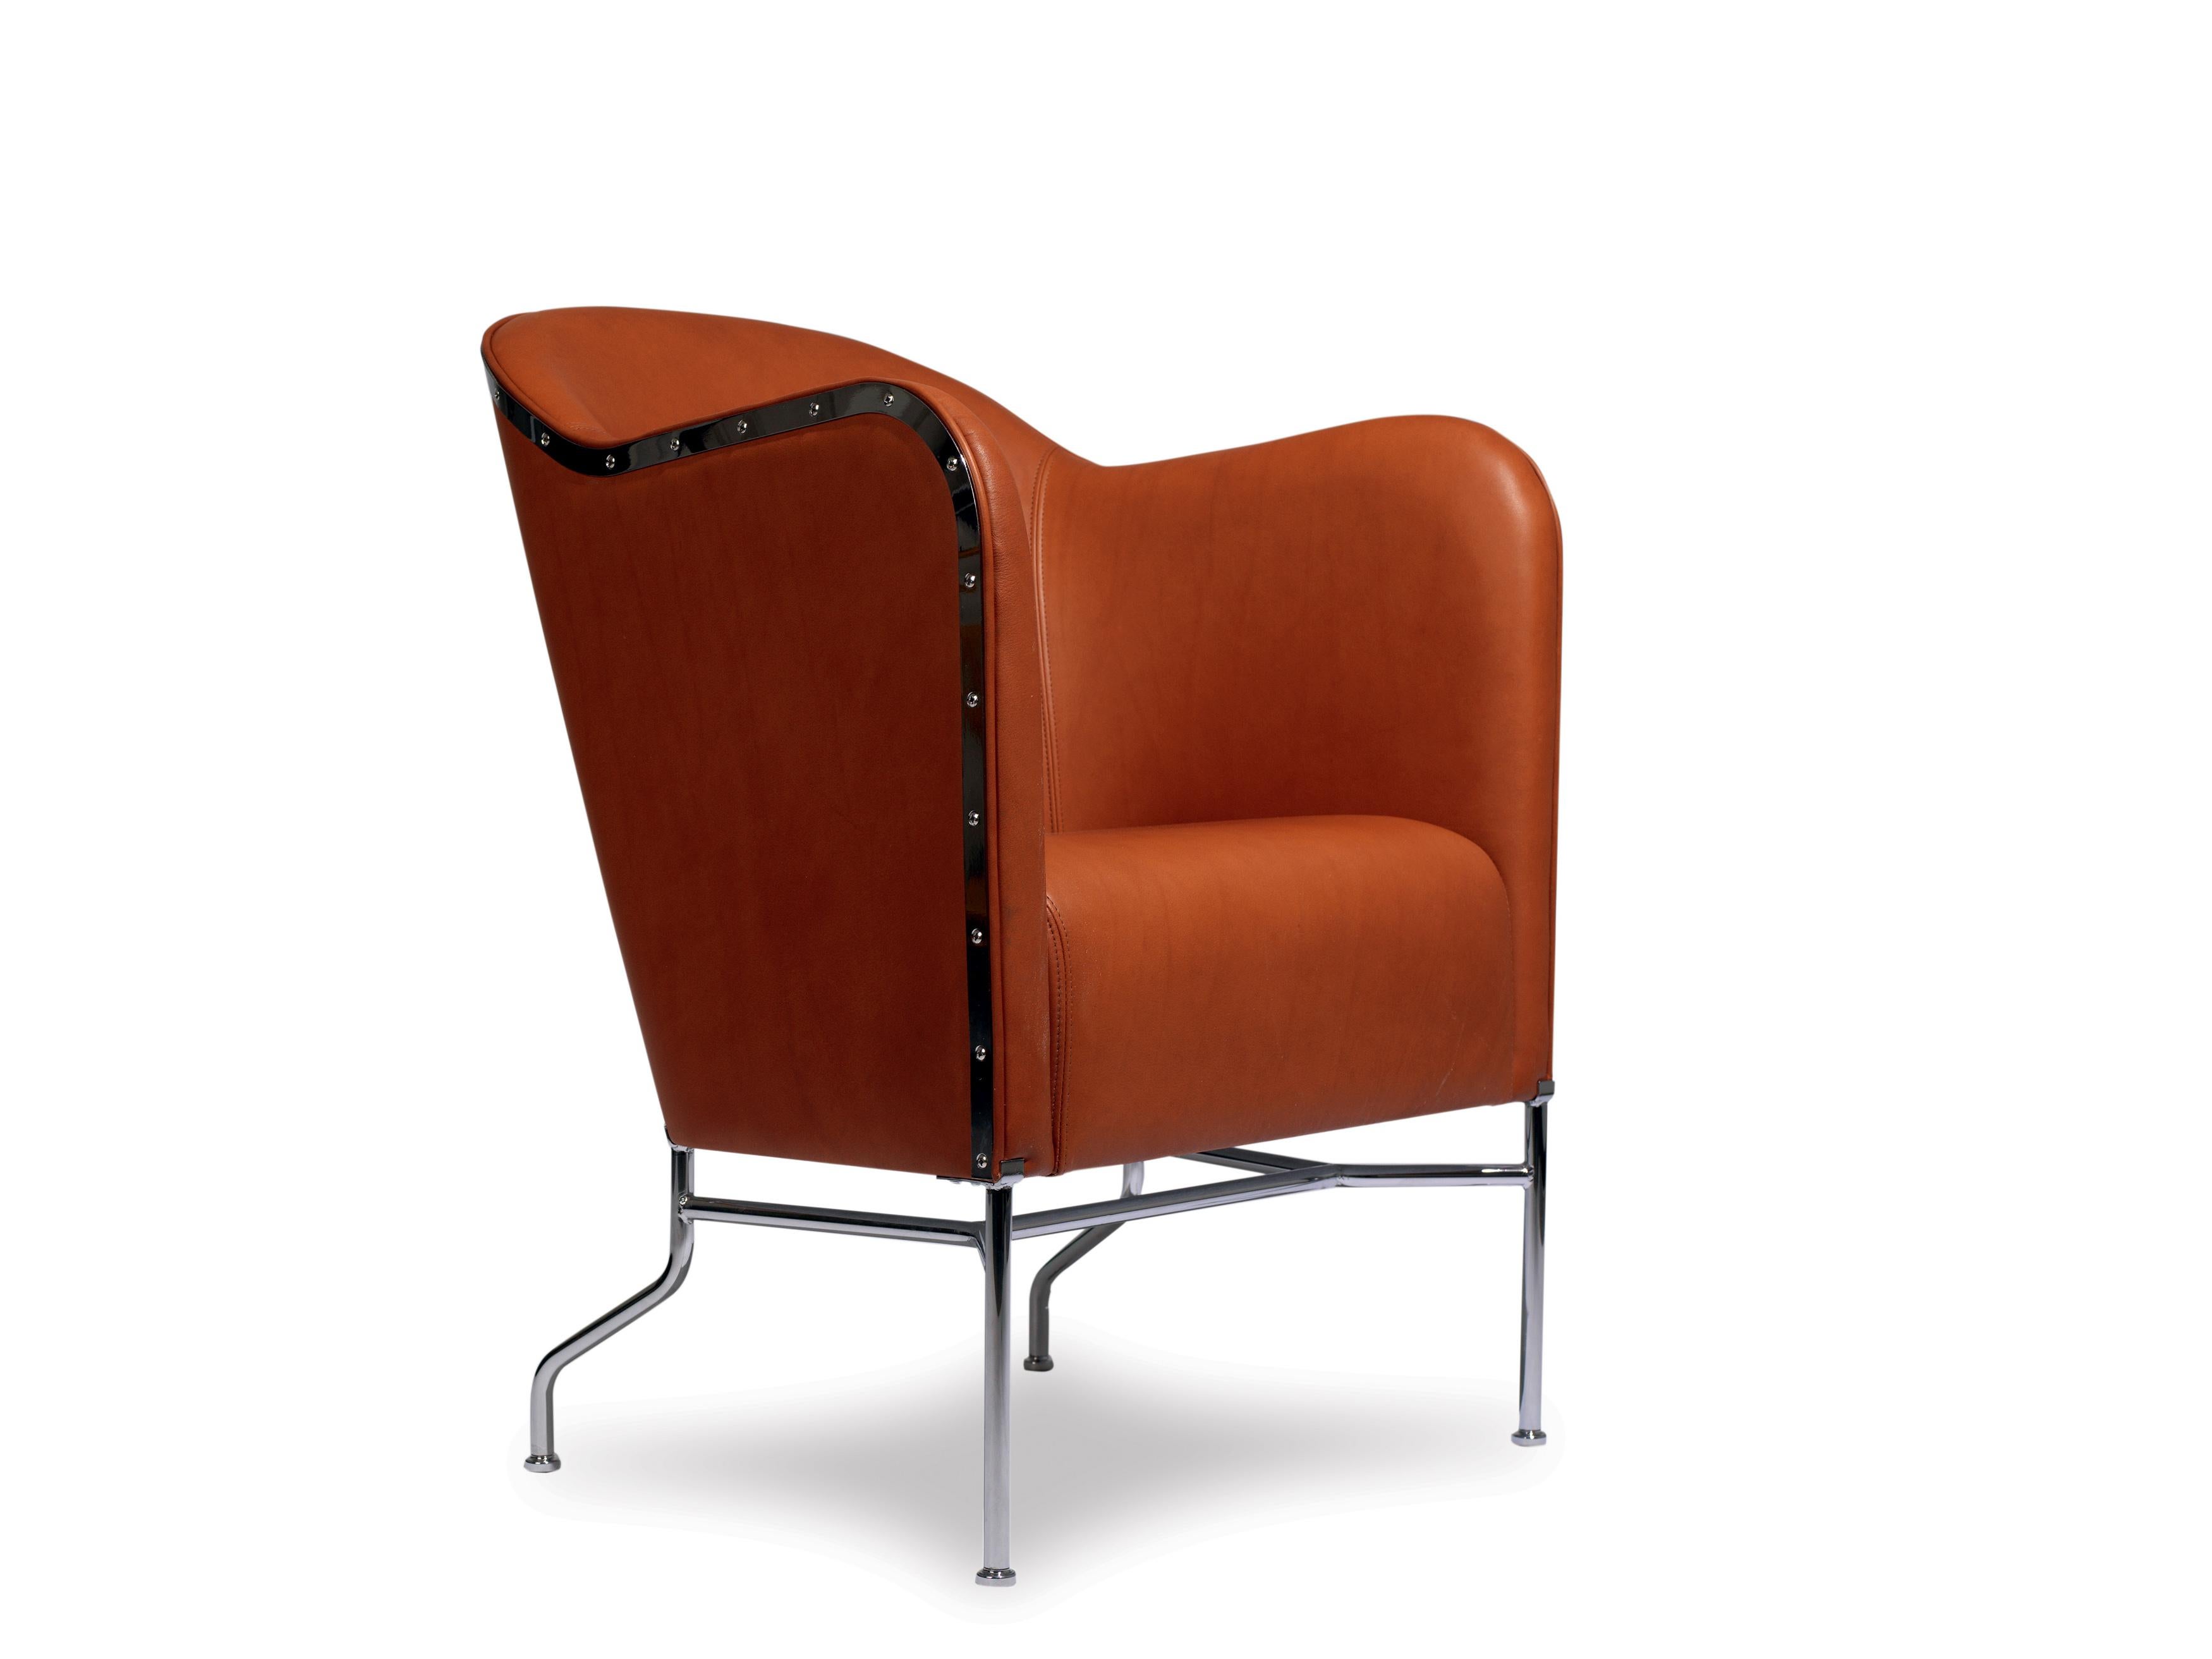 Mats Theselius est l'auteur de plusieurs des meubles suédois les plus remarquables des années 1990. Surprenantes et ingénieuses sont les critiques qui sont souvent utilisées à propos des meubles Mats. Son langage de conception est certes nordique,